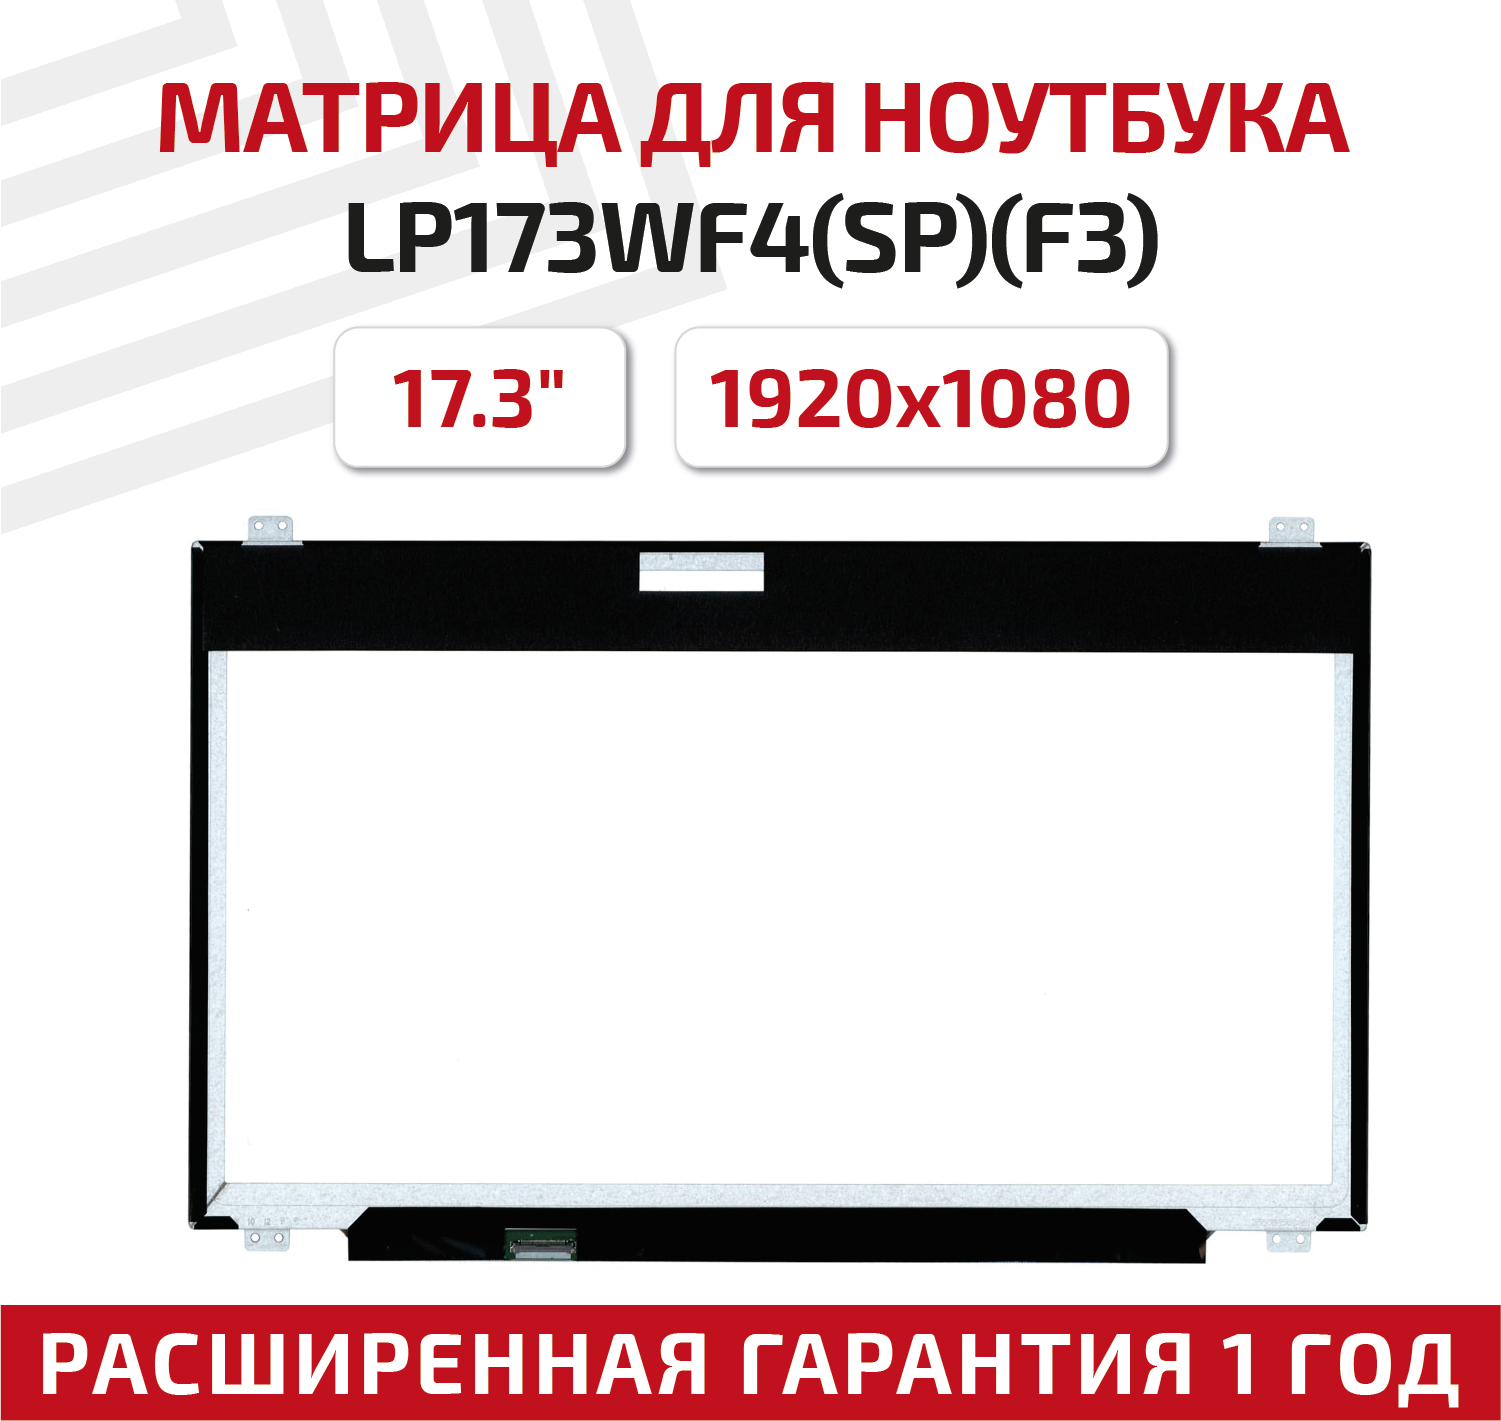 Матрица (экран) для ноутбука LP173WF4(SP)(F3), 17.3", 1920x1080, Slim (тонкая), 30-pin, светодиодная (LED), матовая